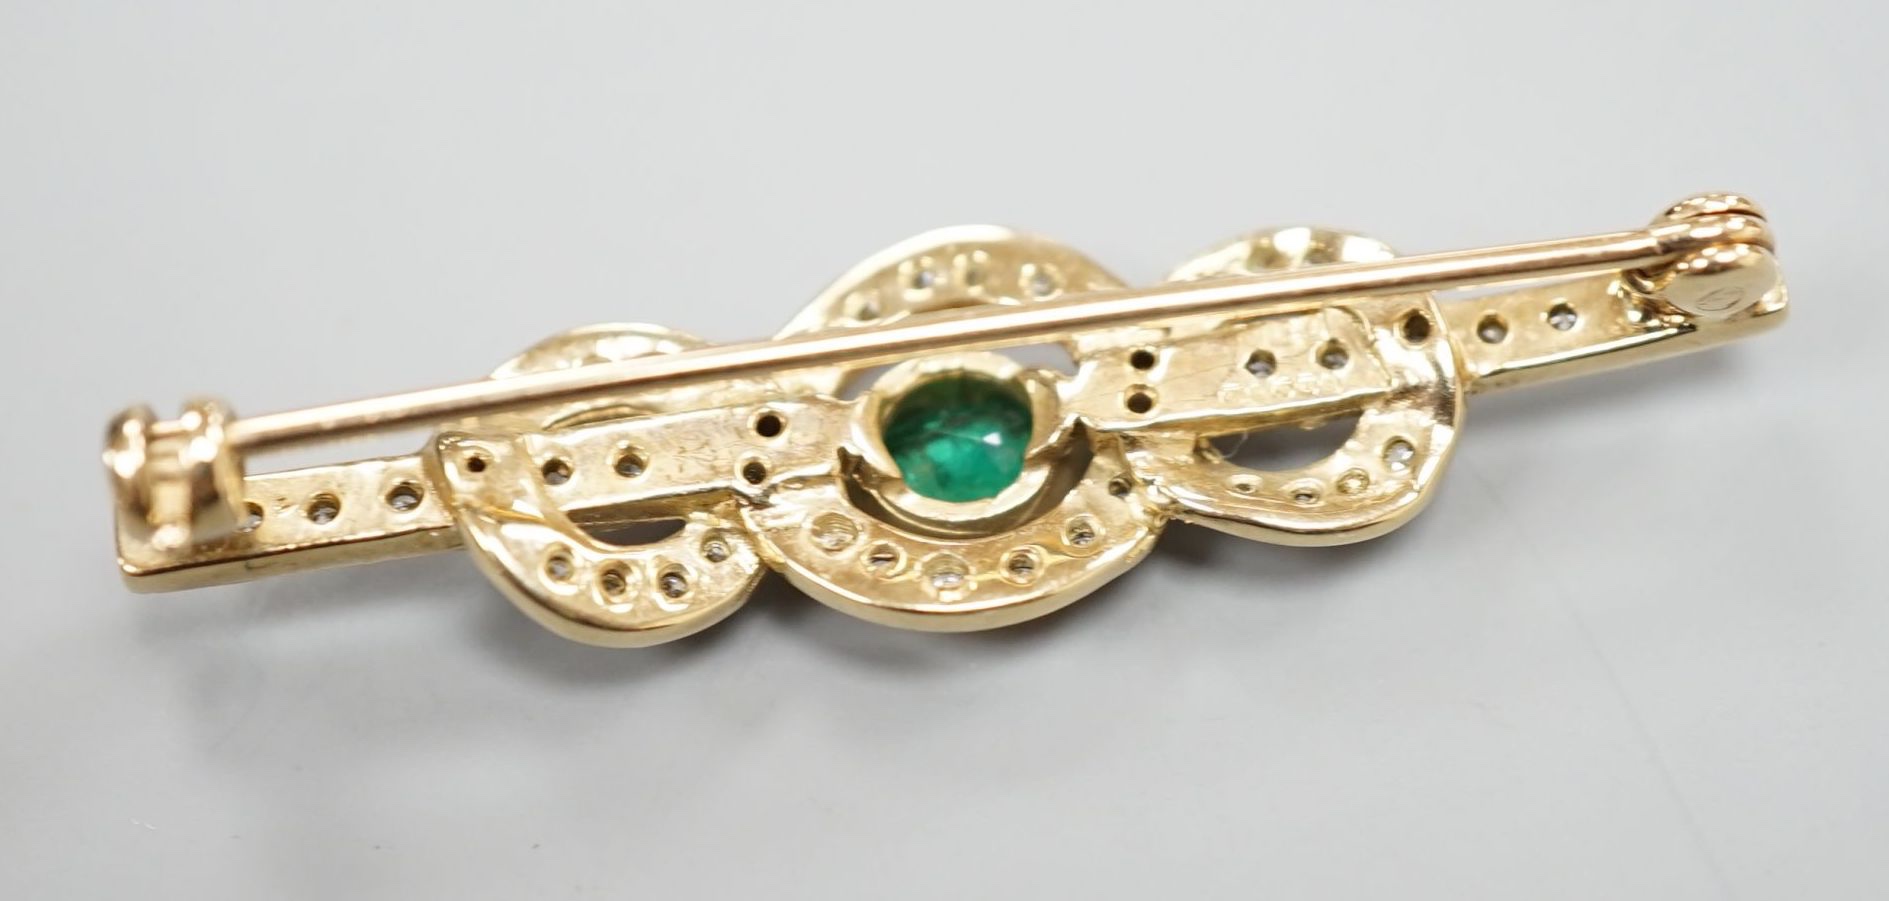 A modern 9ct gold, emerald and diamond cluster set bar brooch, 43mm, gross 3.9 grams.